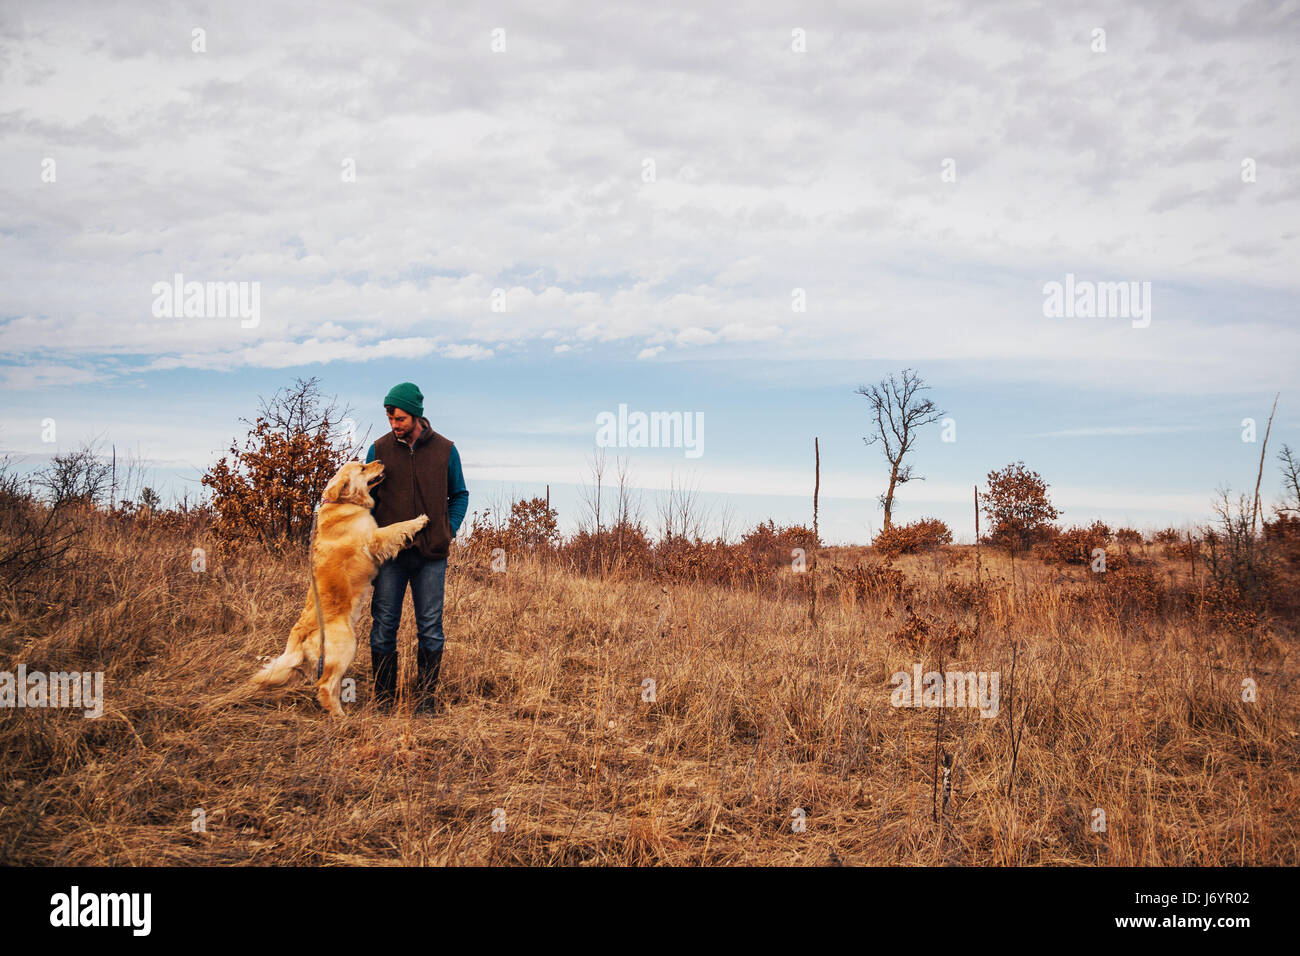 Homme debout dans un paysage rural avec golden retriever dog Banque D'Images